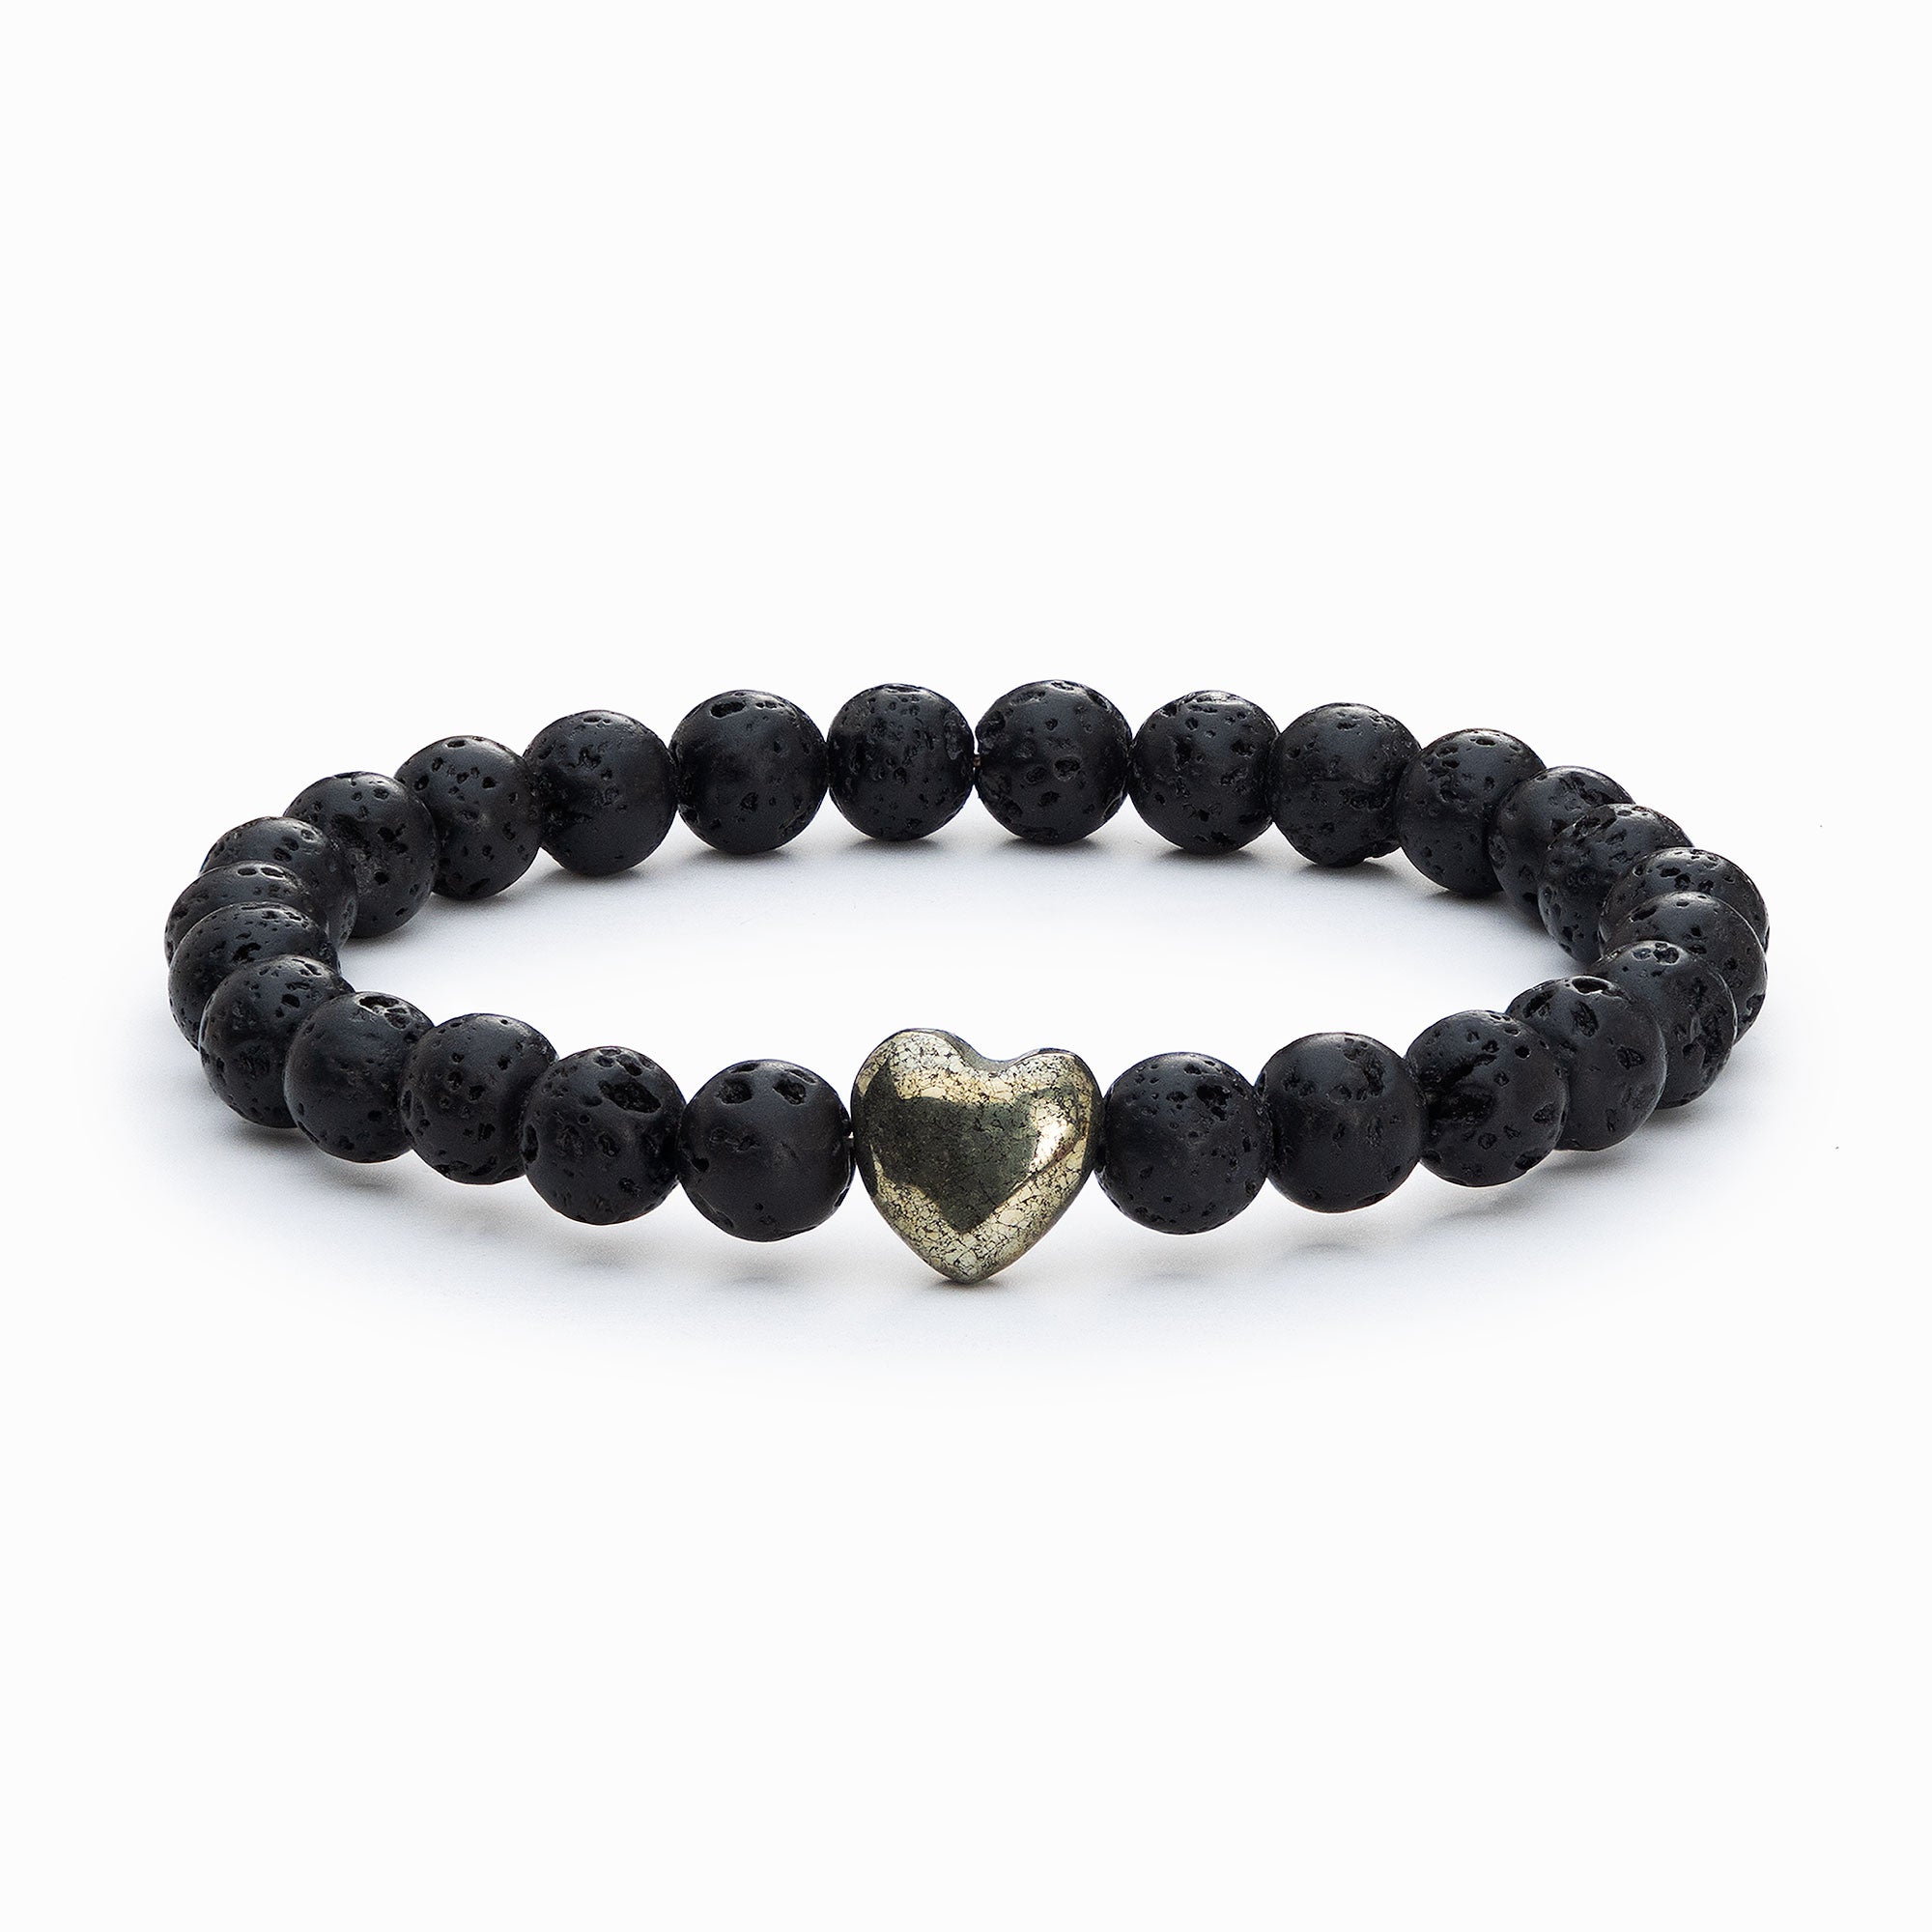 Beaded Black Lava Stone Heart Charm Bracelet